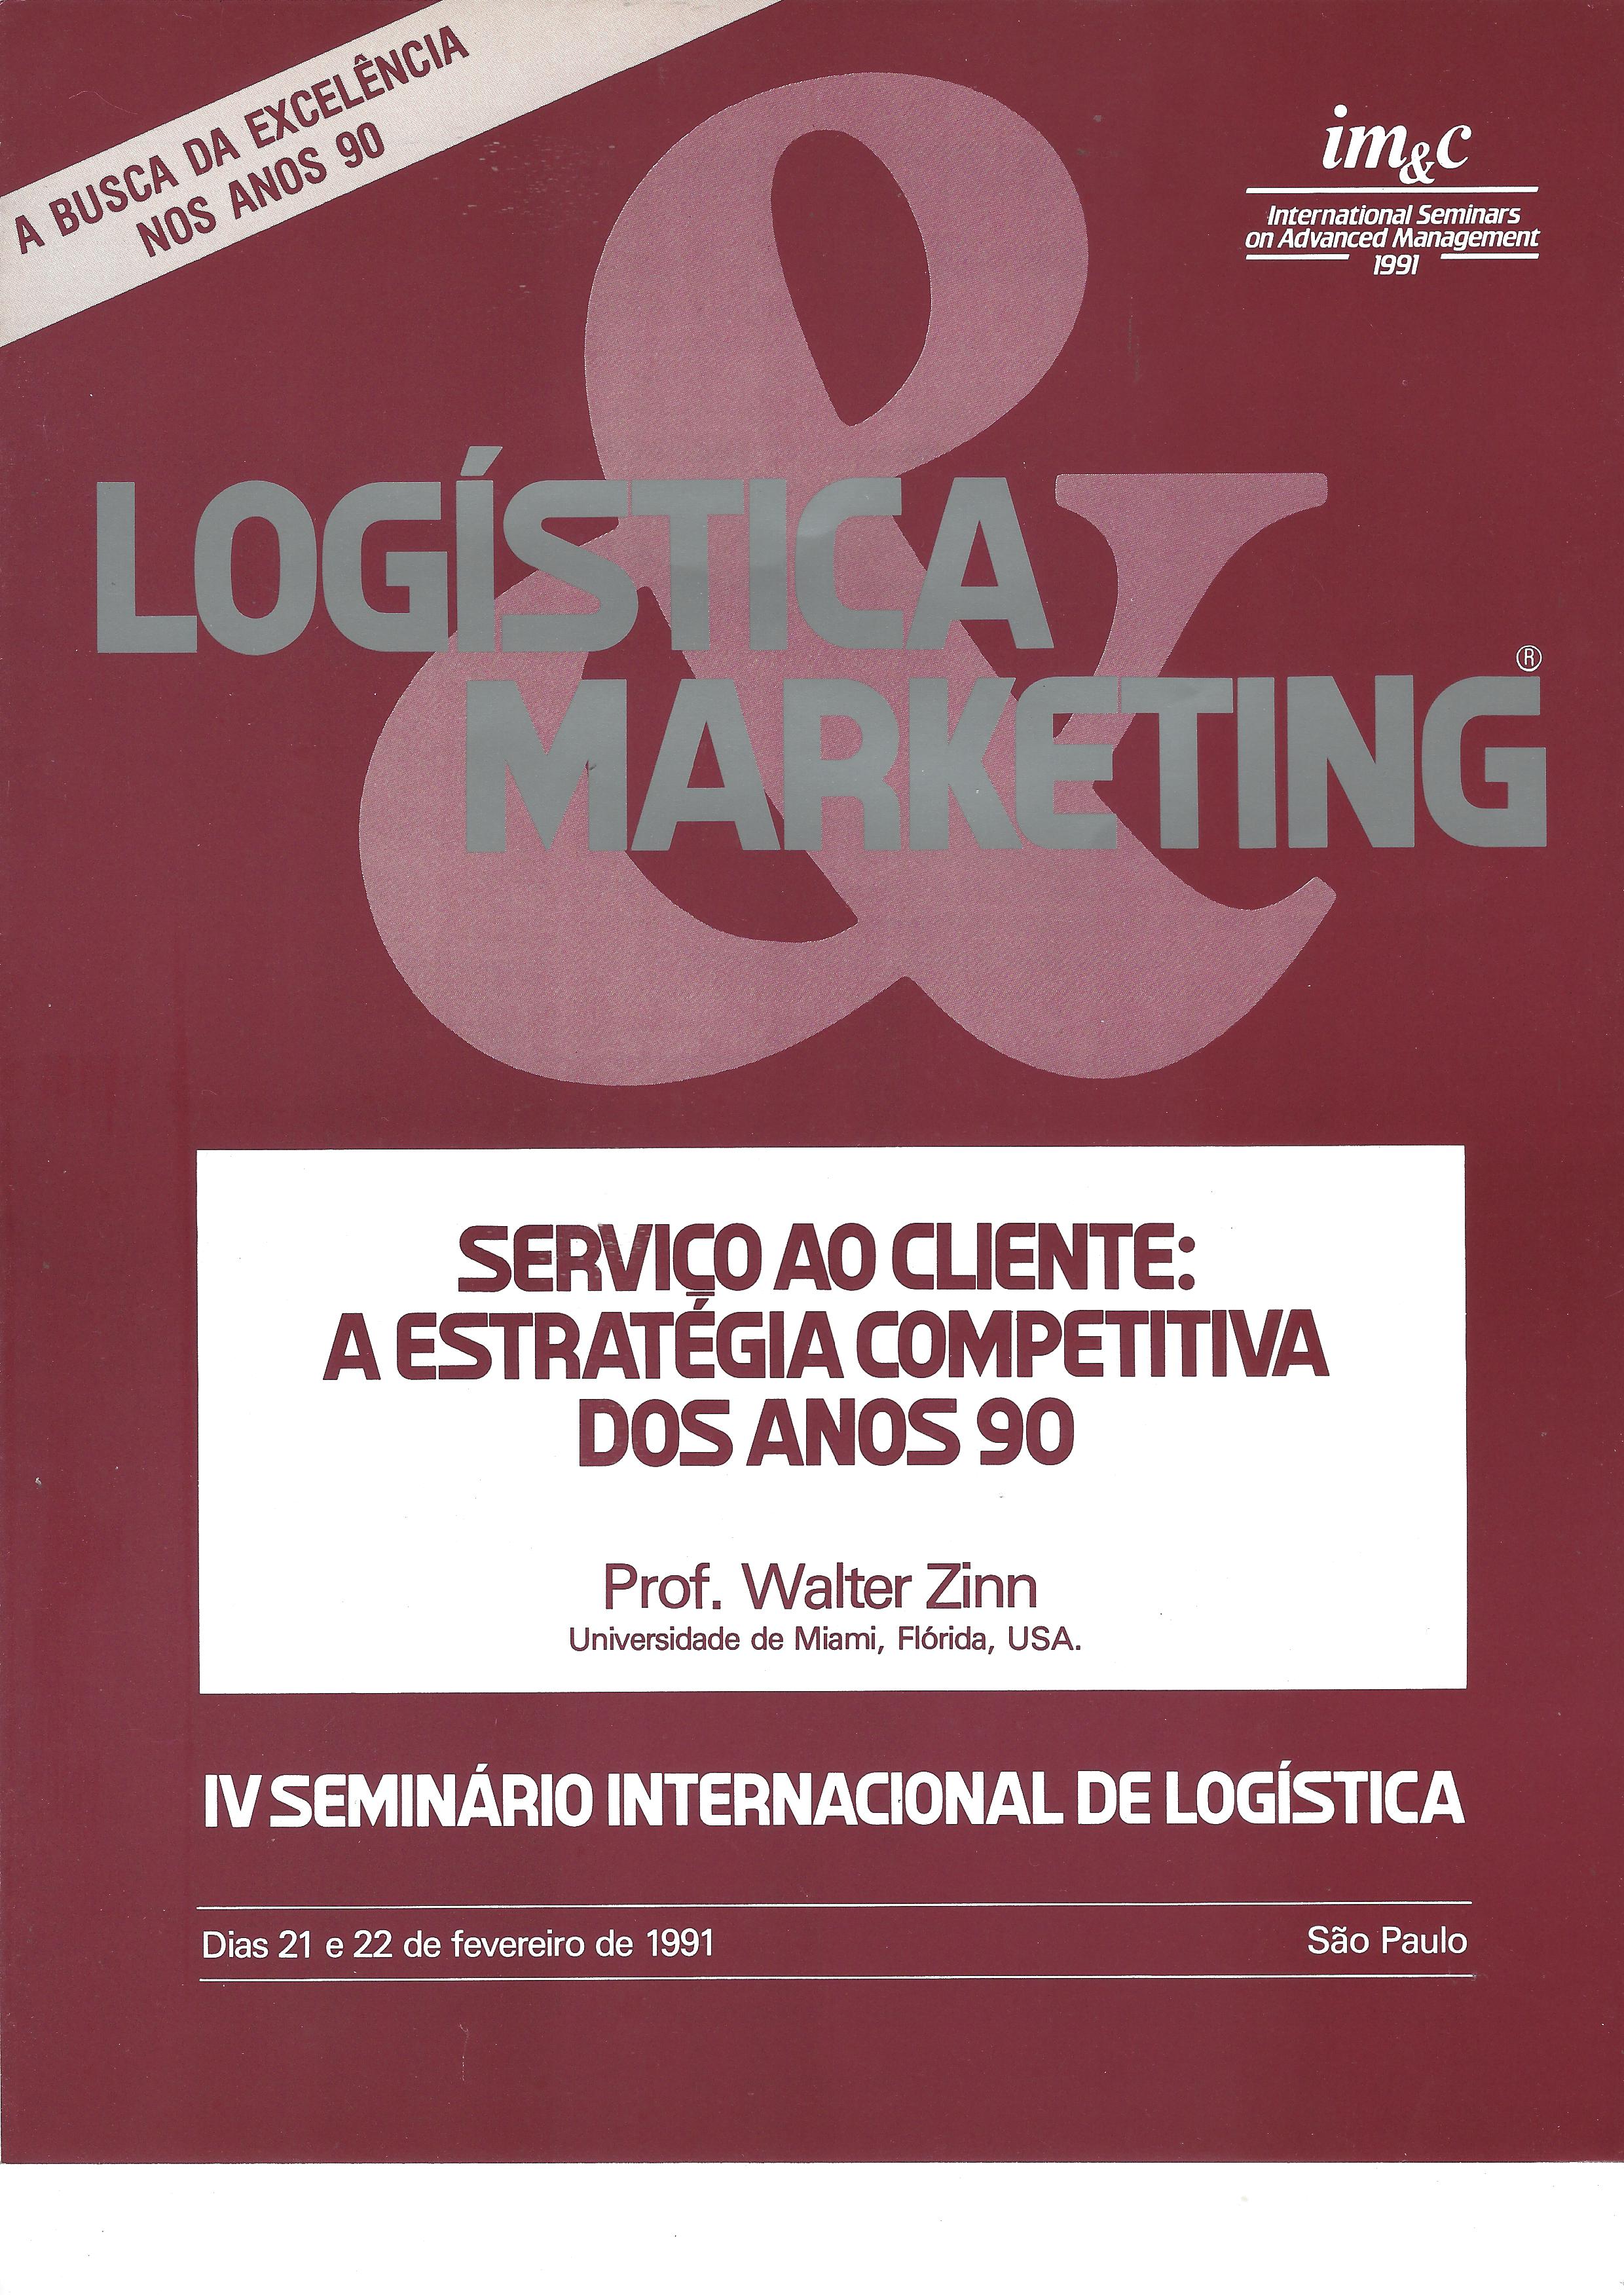 logística marketing – serviço ao cliente: a estratégia competitiva dos anos 90